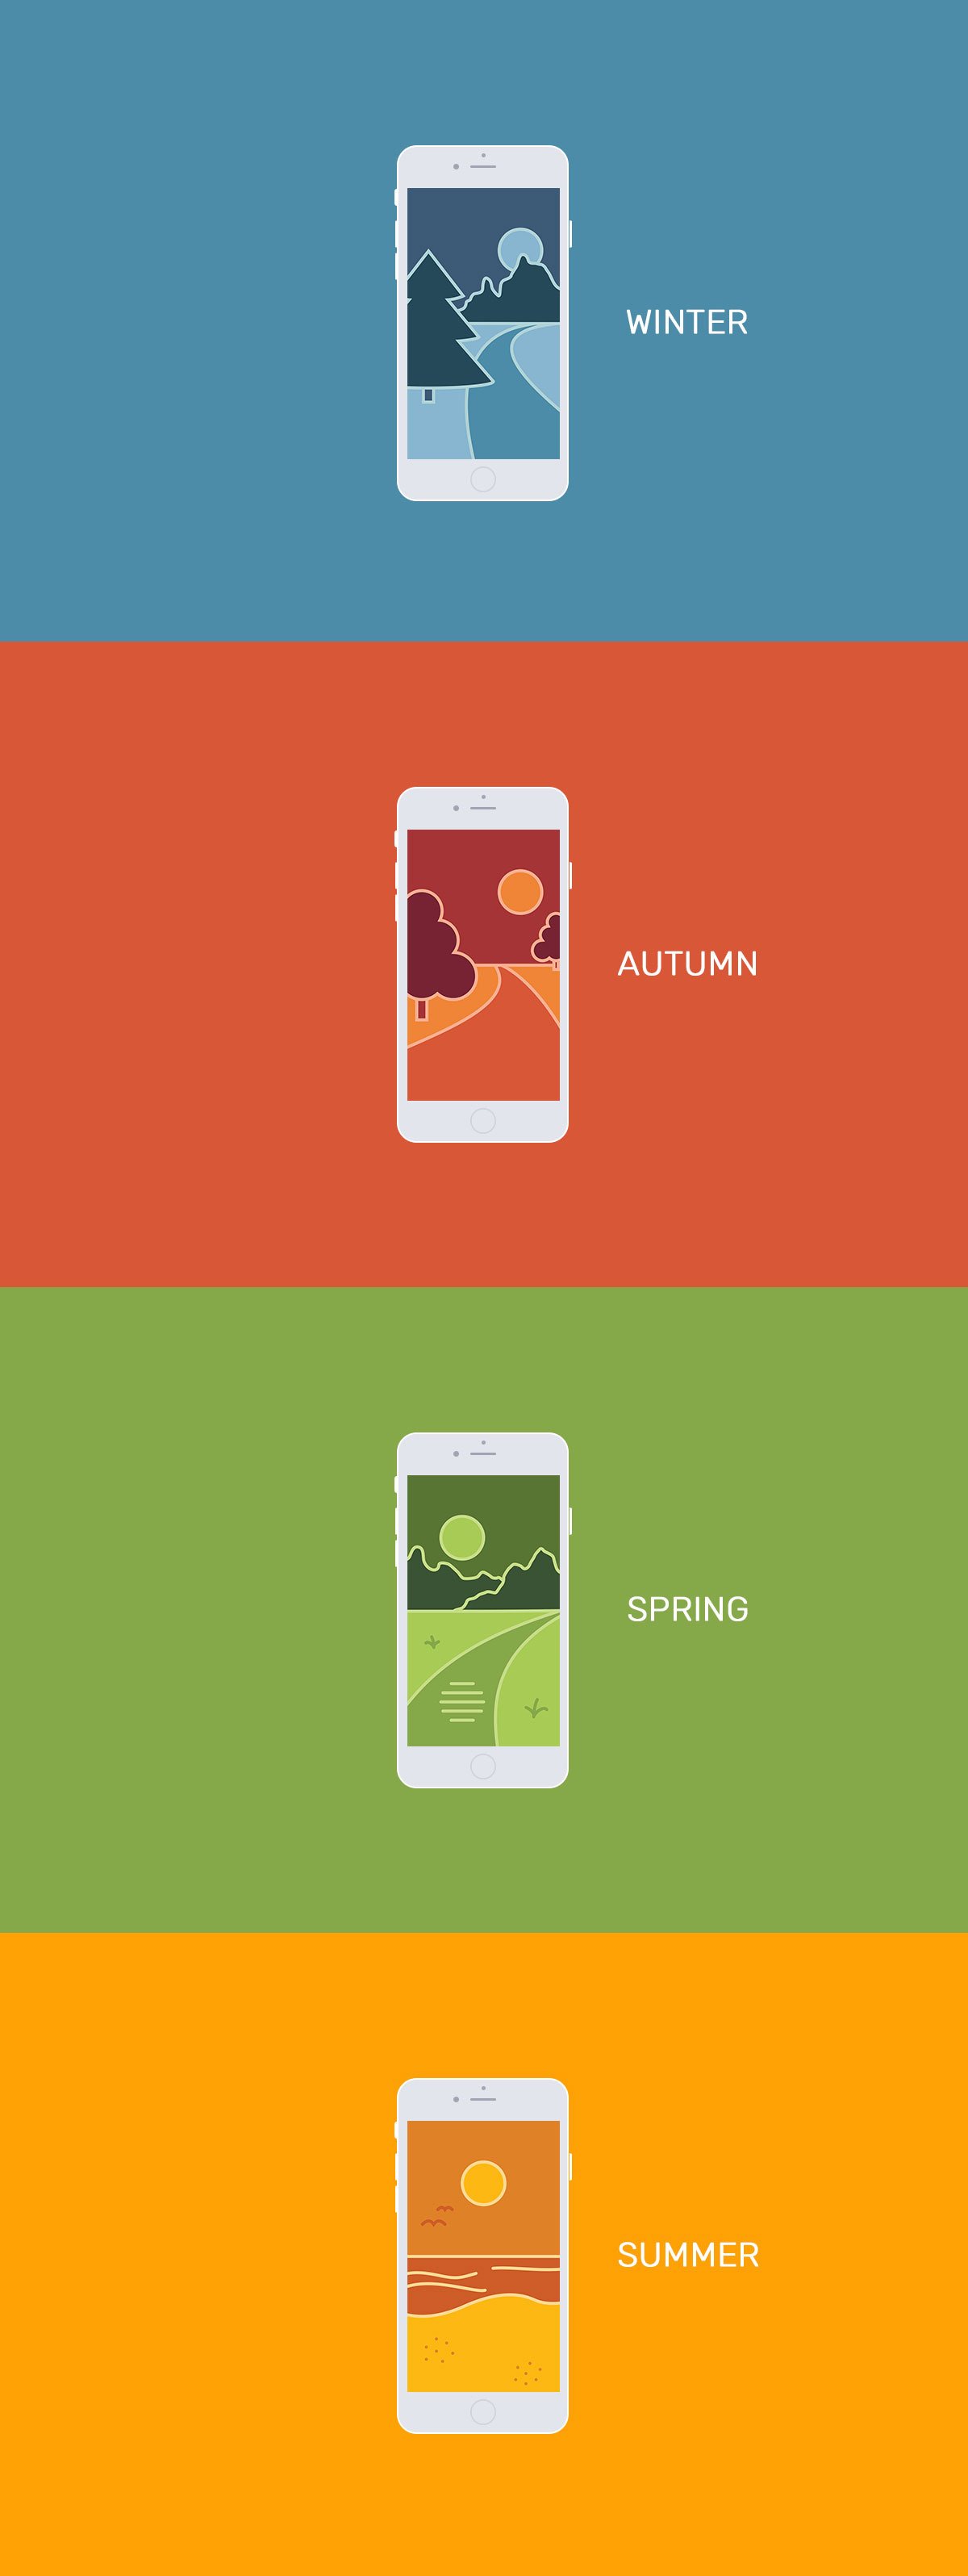 Free iPhone Seasons Wallpapers Pack